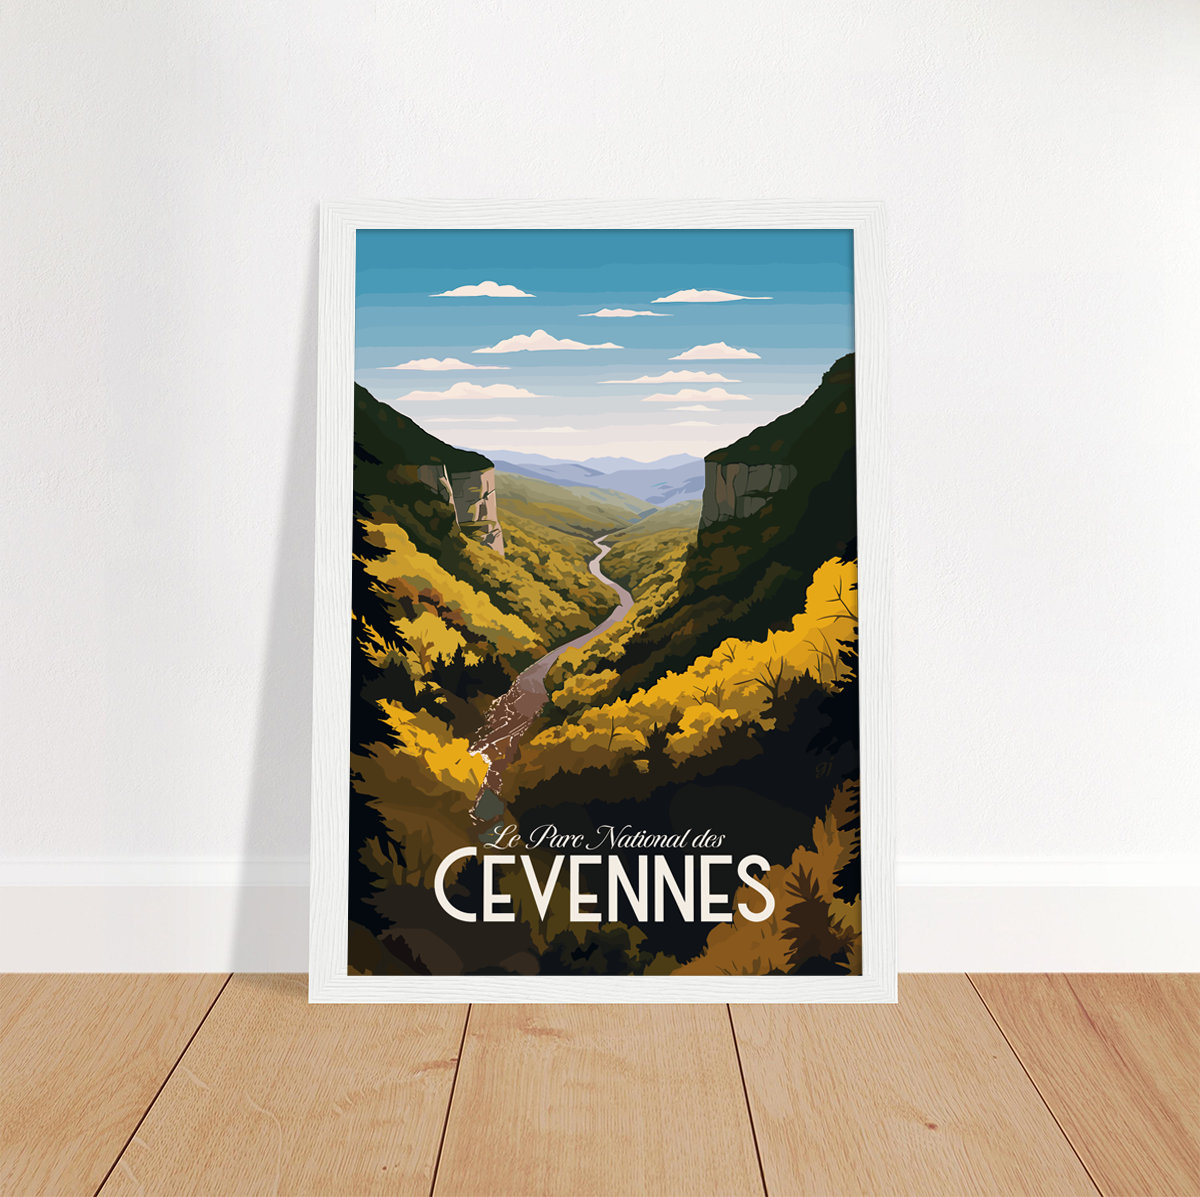 Cevennes poster by bon voyage design